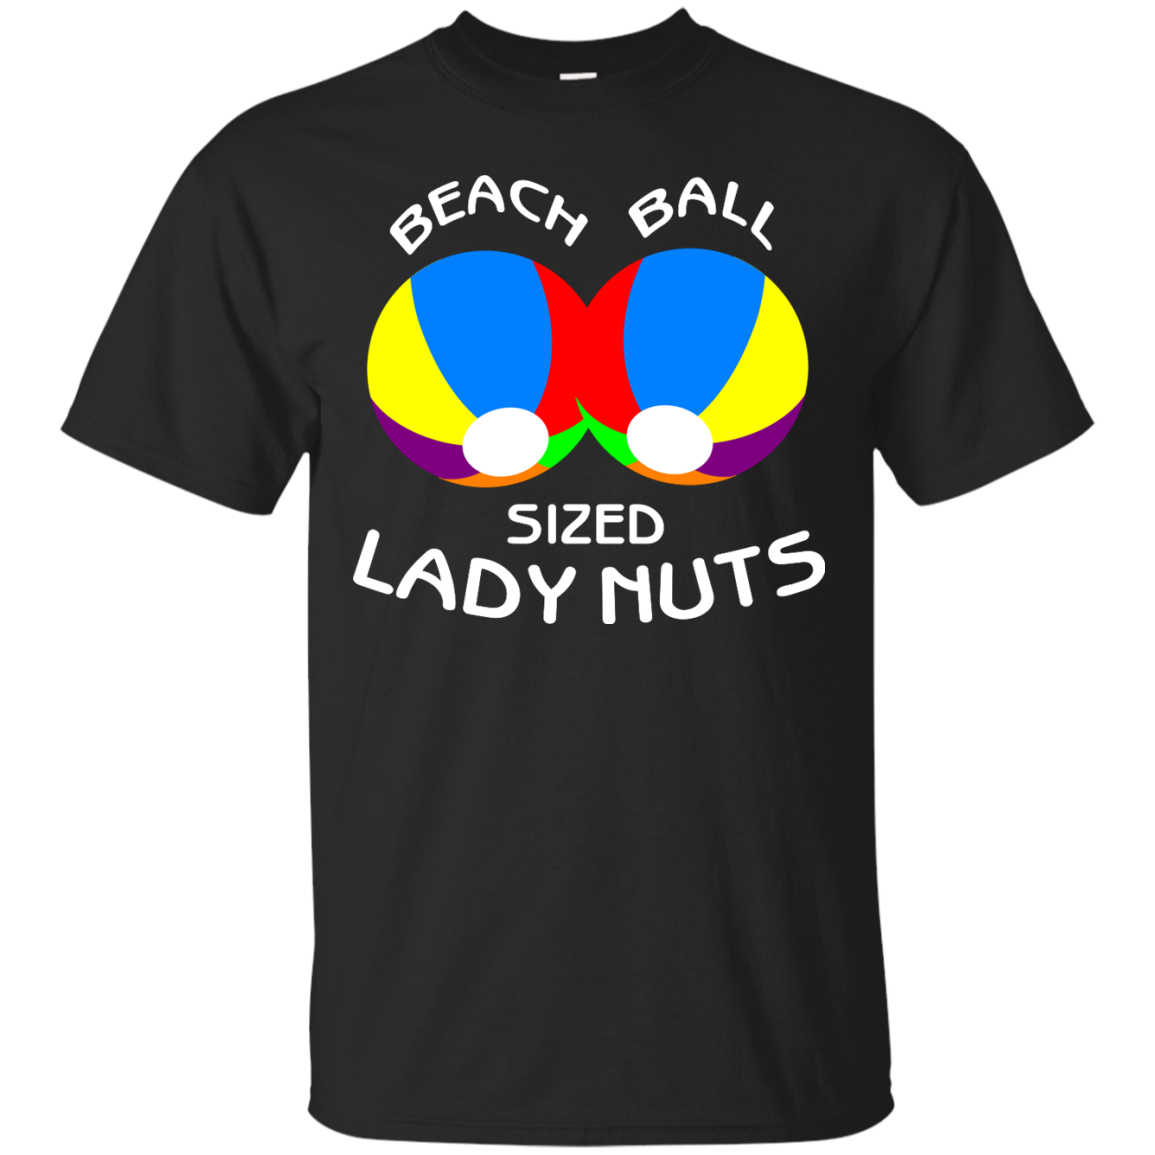 Beach Ball Sized Lady Nuts shirt, sweater, tank